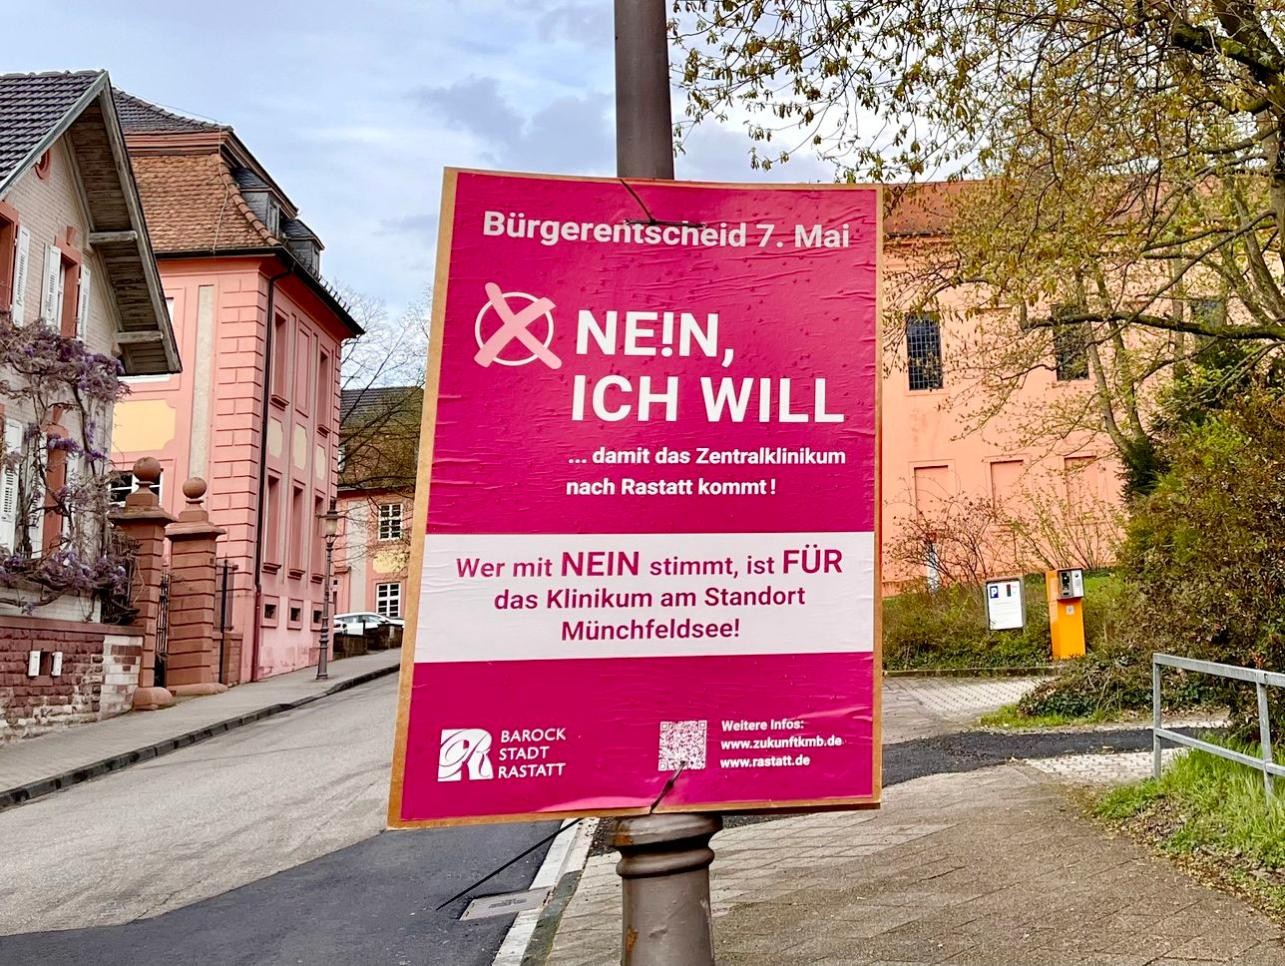 Affiche de la campagne du "non" de la ville de Rastatt pour le référendum du 7 mai, accrochée à un lampadaire à Rastatt